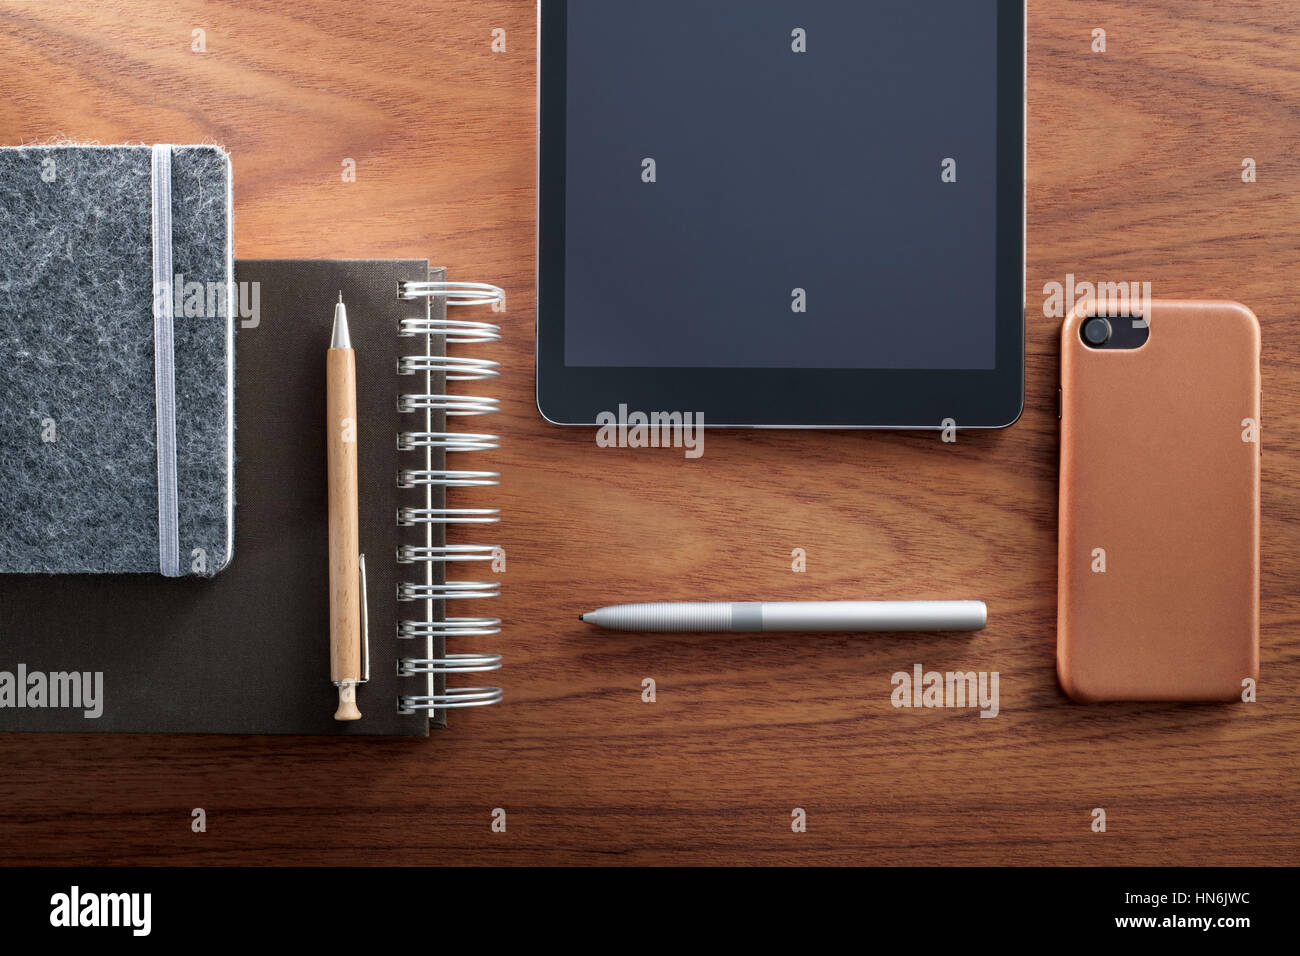 Tableta Digital, Smartphone, Bloc de notas, lápiz y bolígrafo, y en el mostrador de madera. Vs analógico digital. Foto de stock